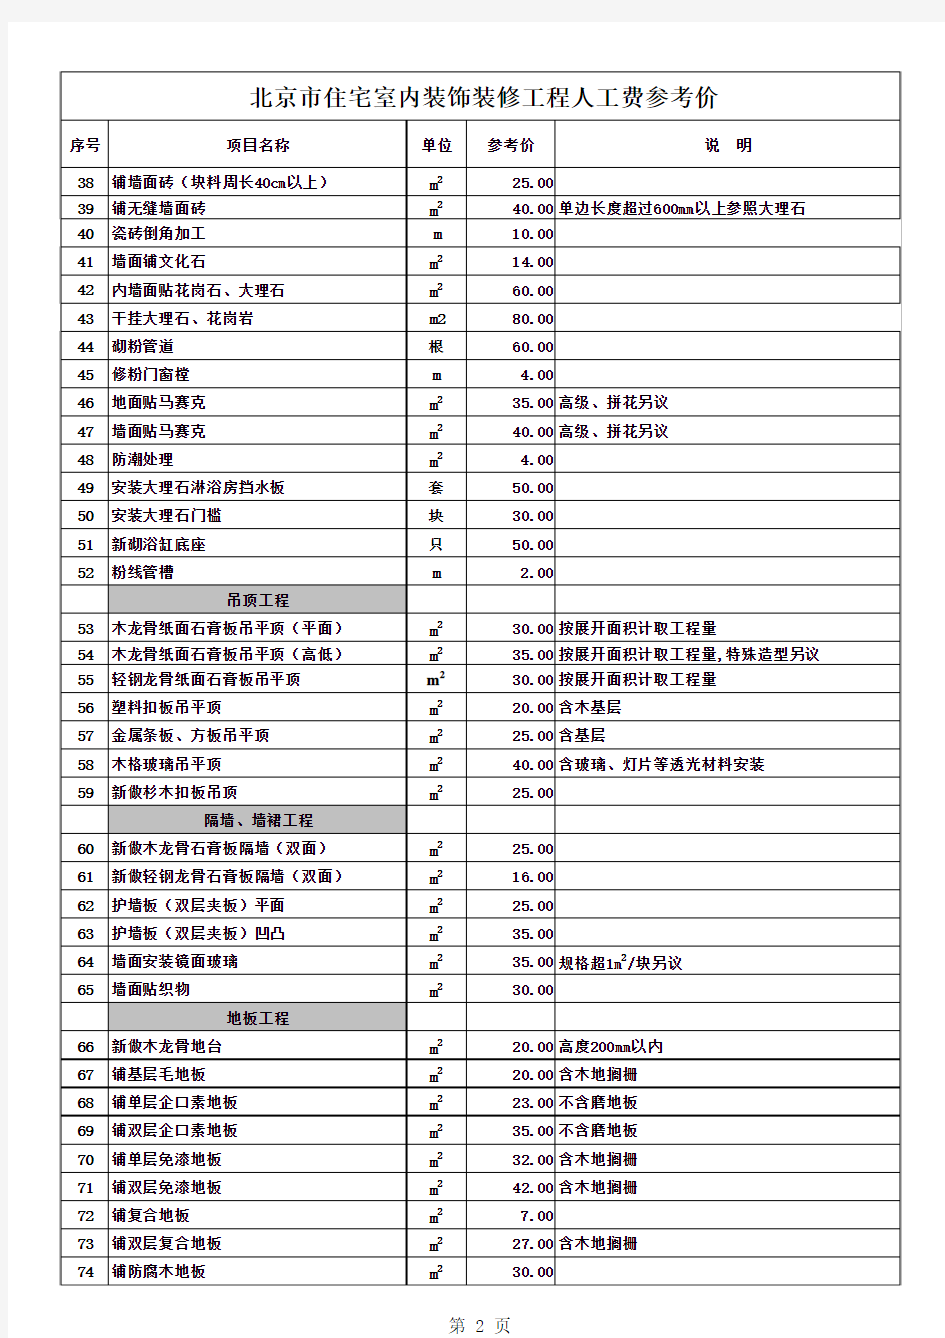 北京市人工费参考表2012